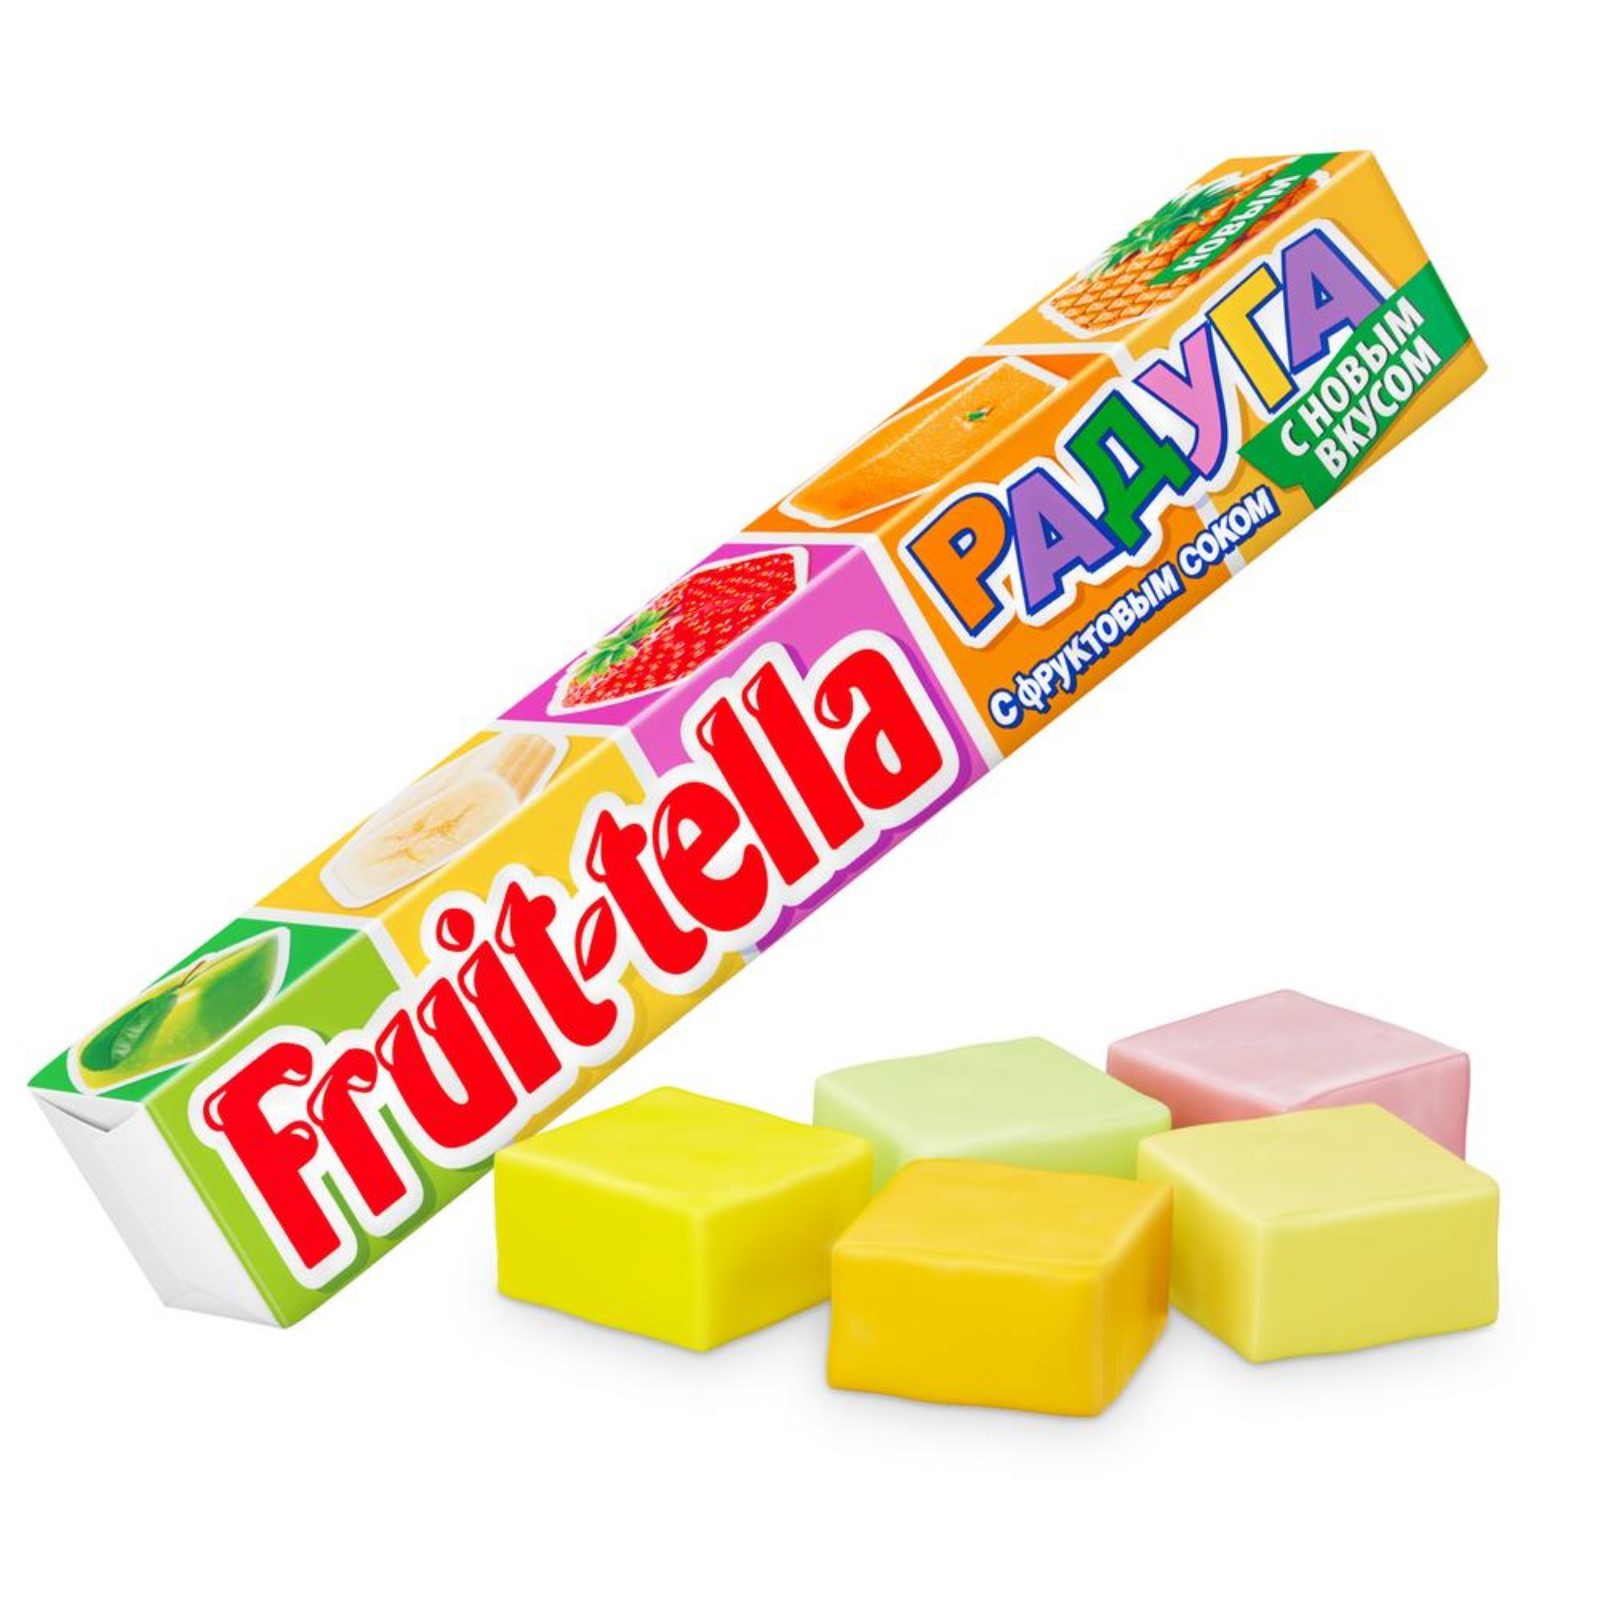 Жевательная конфета Fruittella, Радуга, 42,5 г